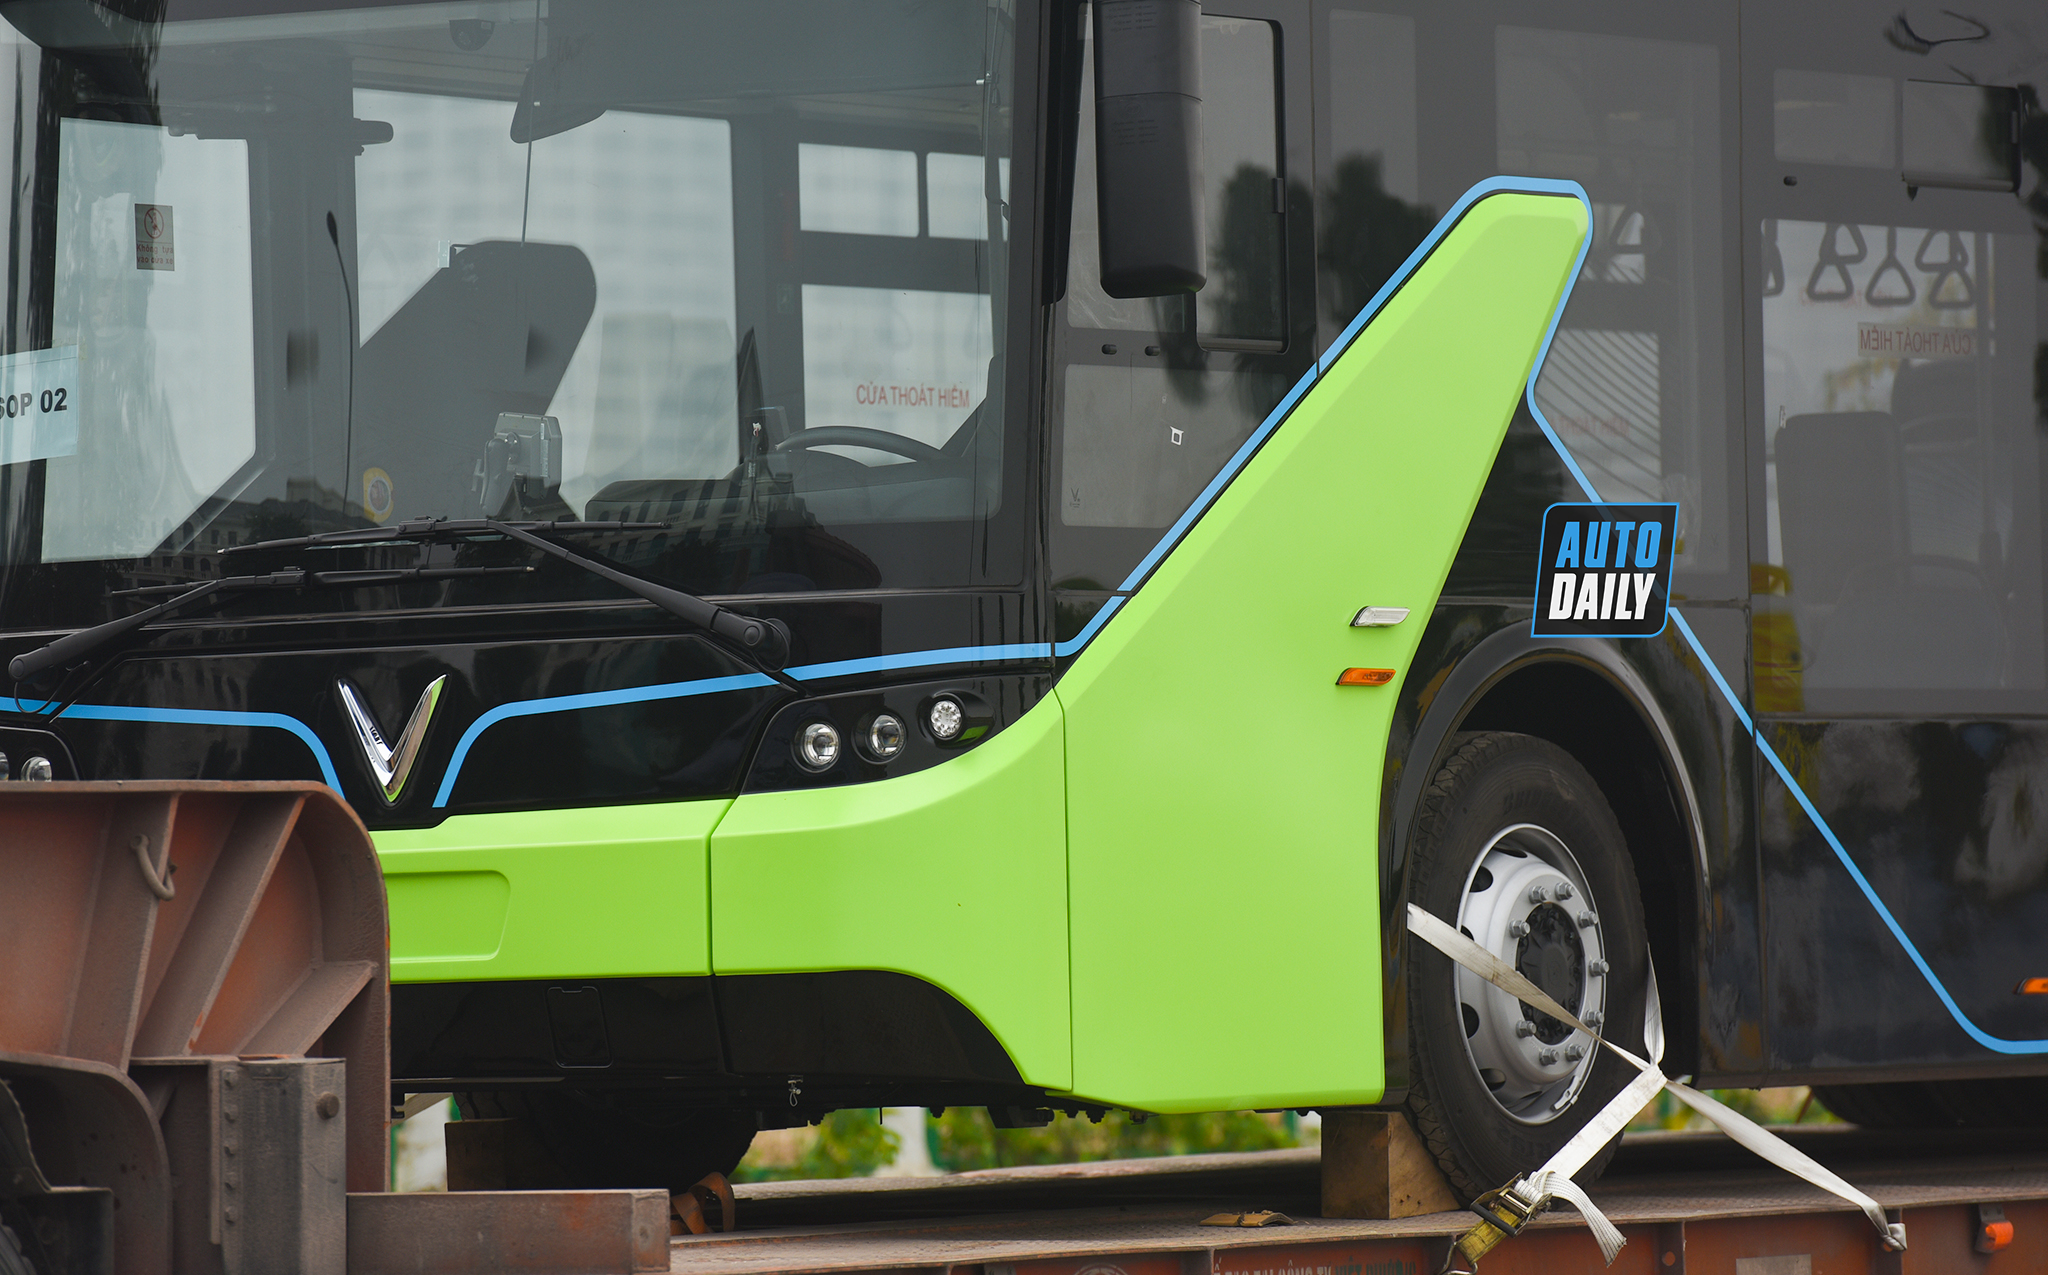 Chùm ảnh loạt xe Bus điện VinFast có mặt tại Hà Nội, sẵn sàng chạy thí điểm dsc-38443-copy.jpg